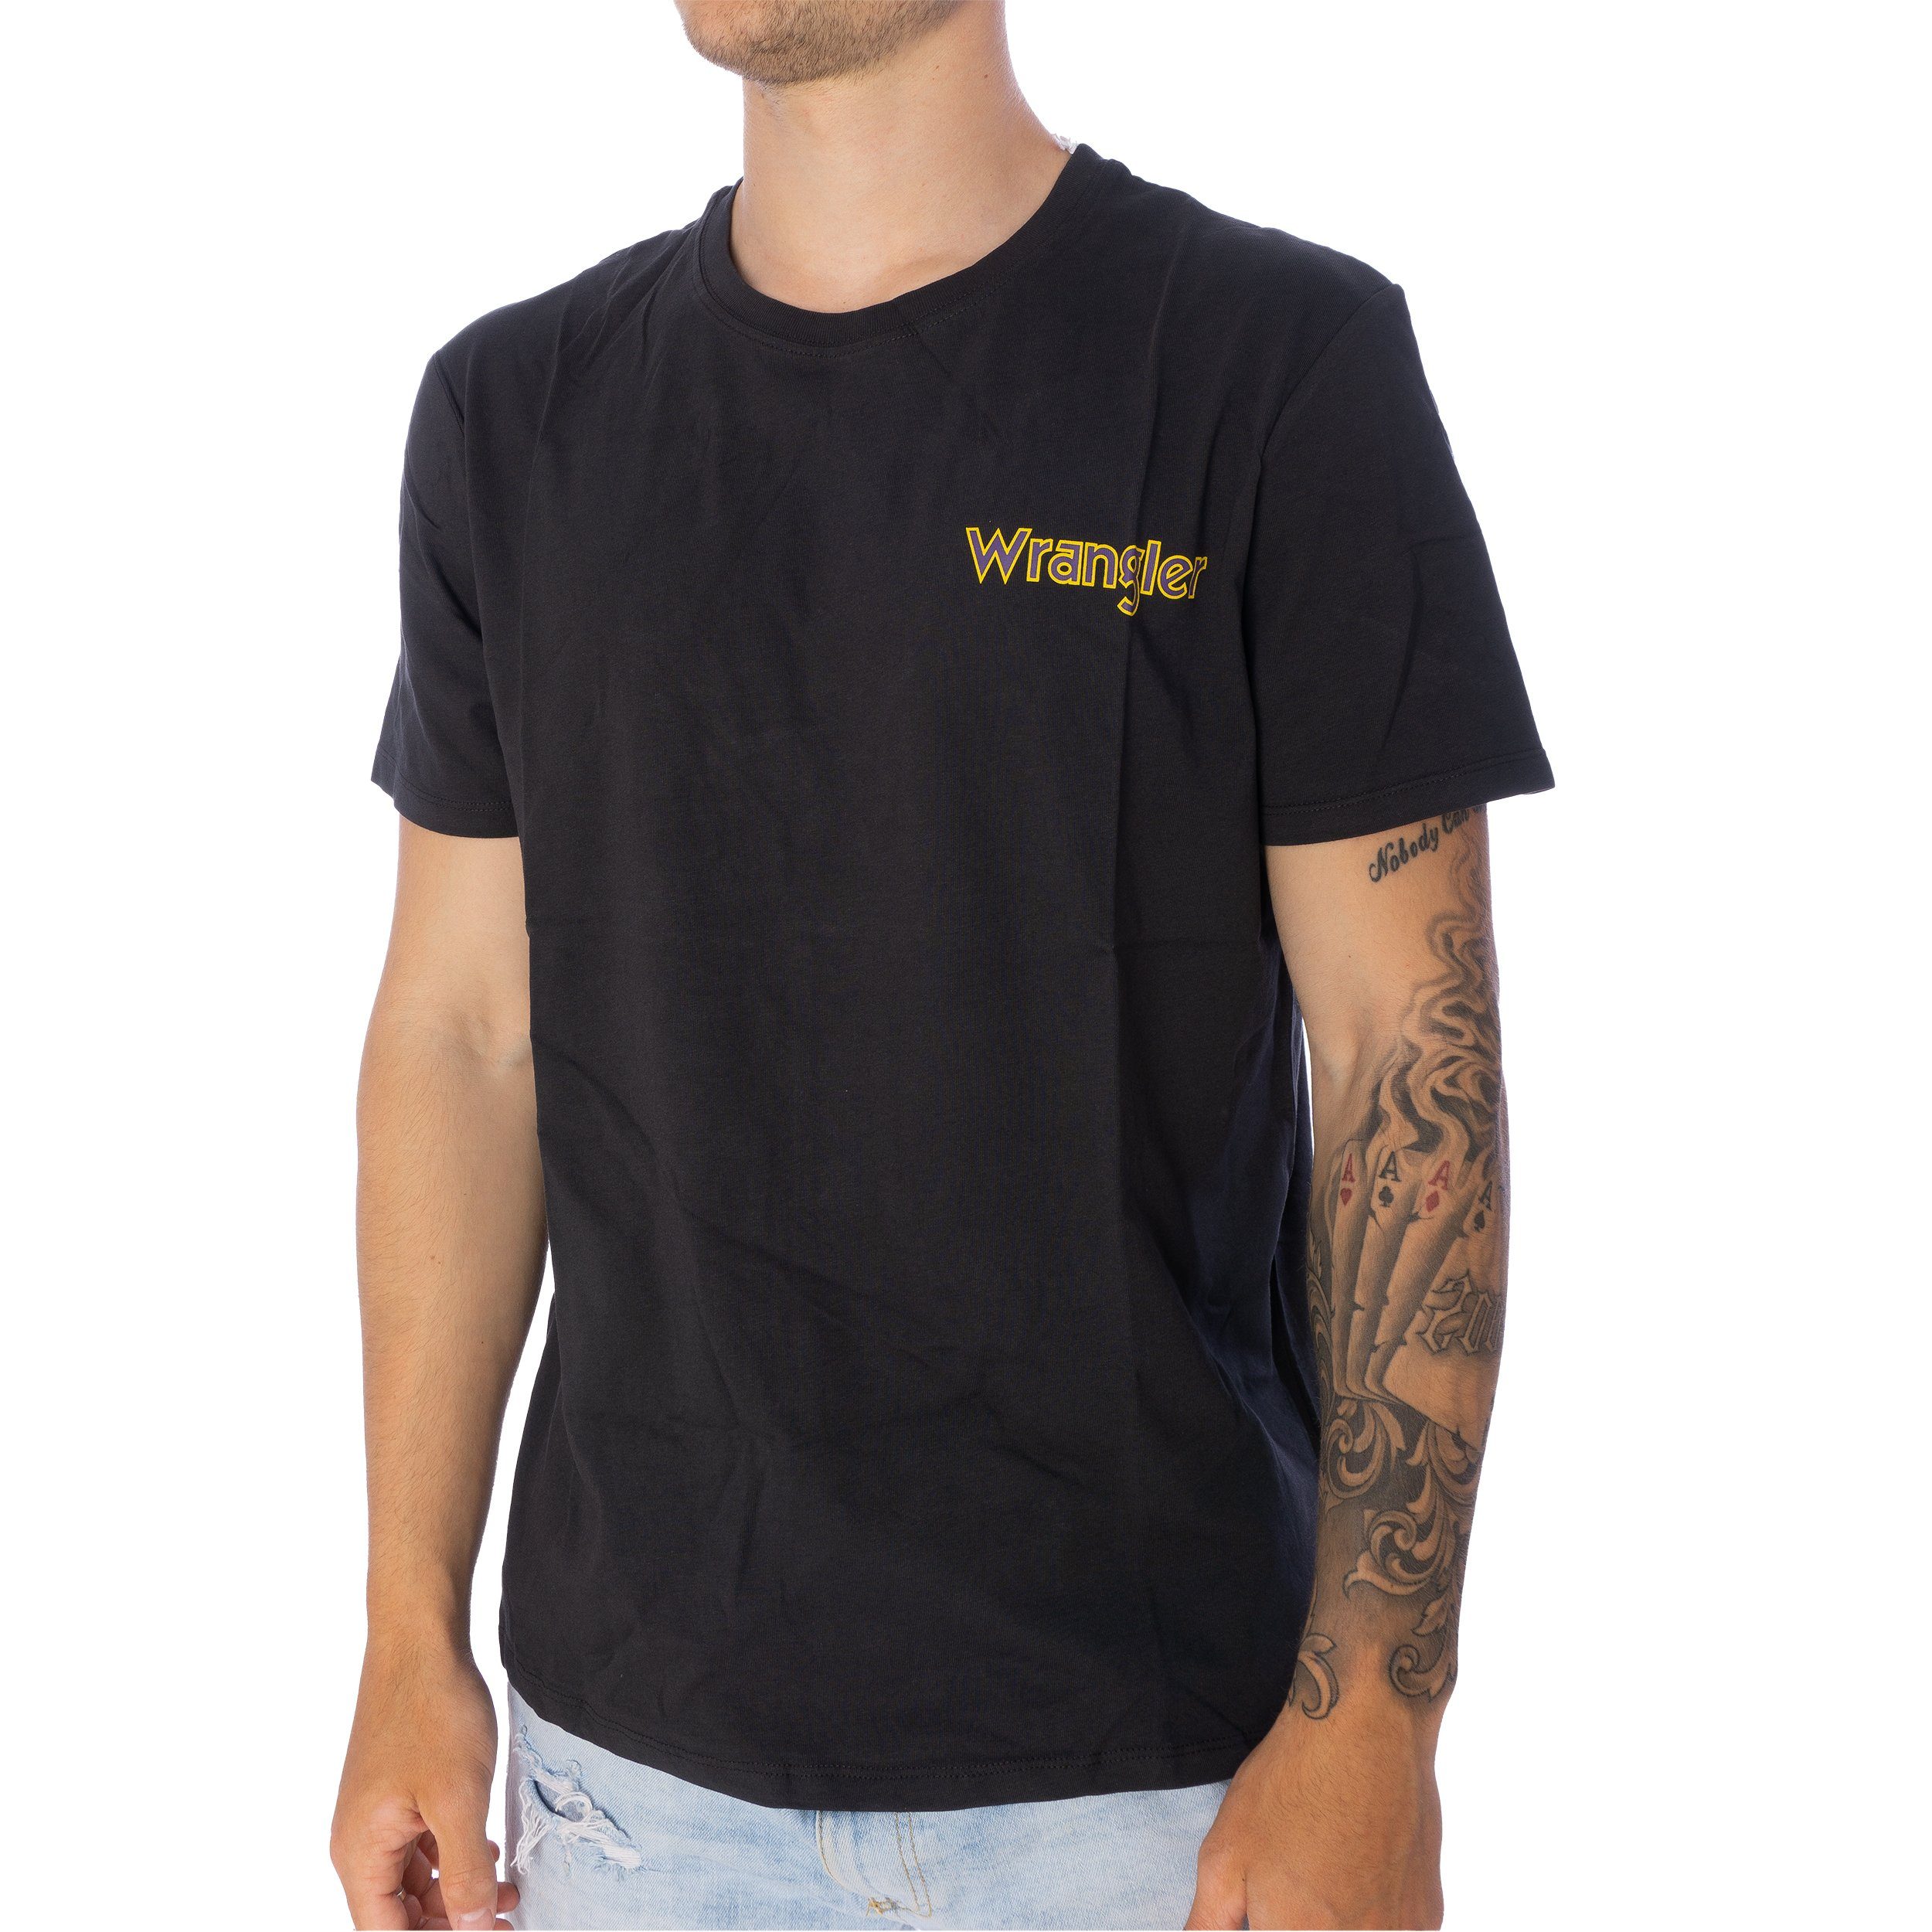 Wrangler Wrangler Graphic T-Shirt T-Shirt